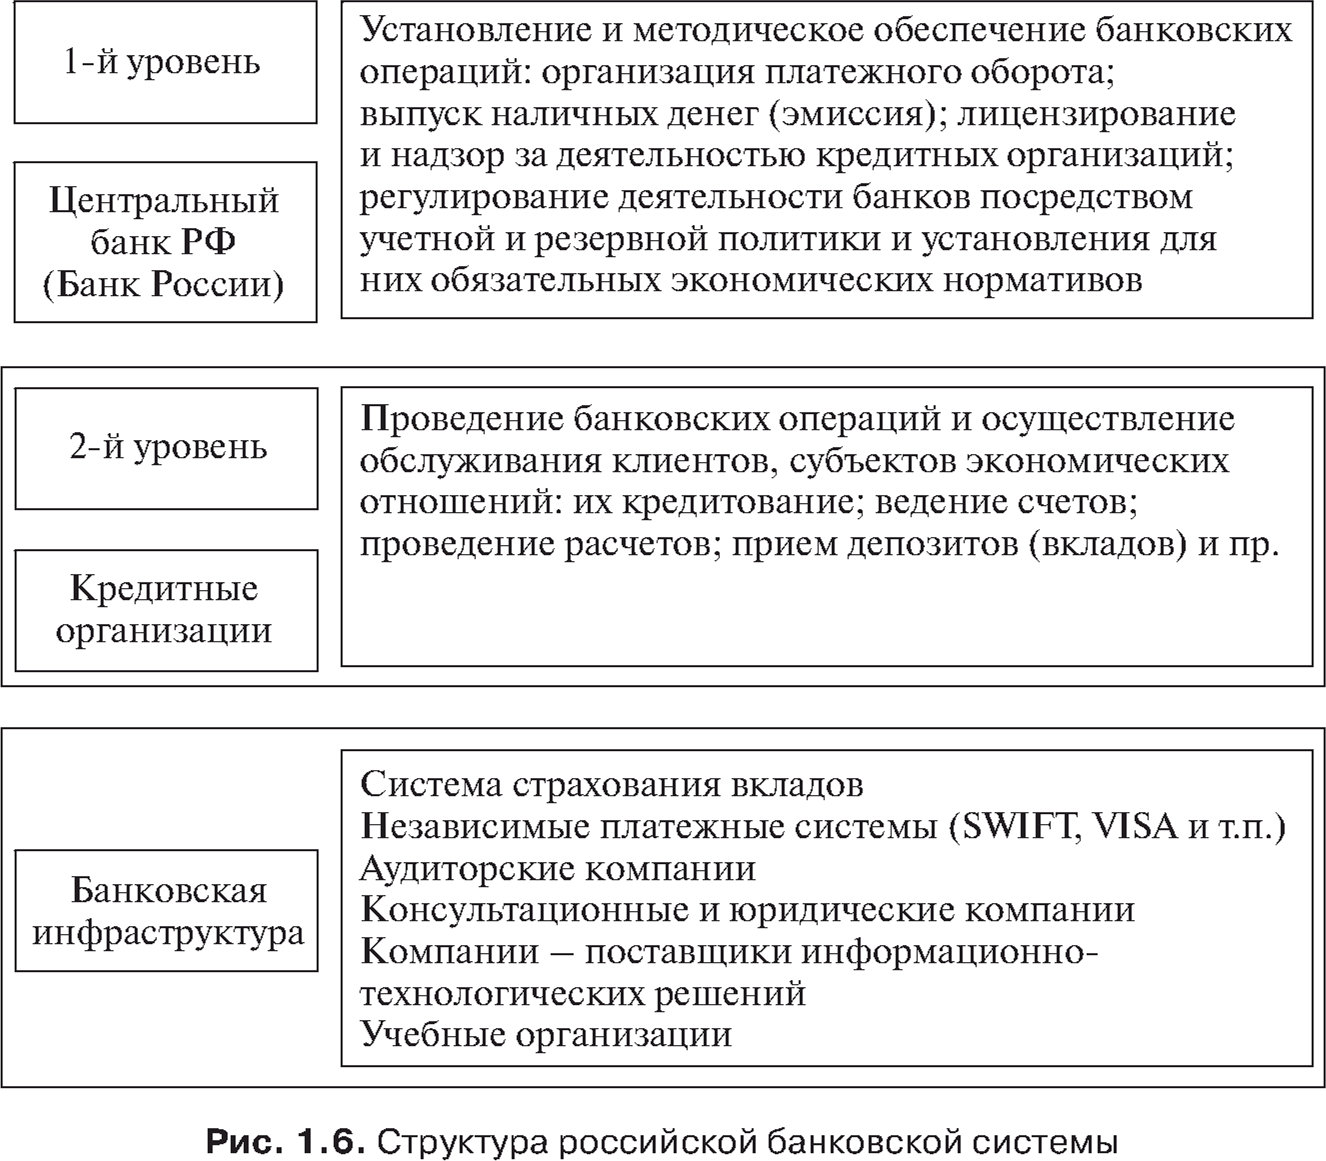 Структура российской банковской системы